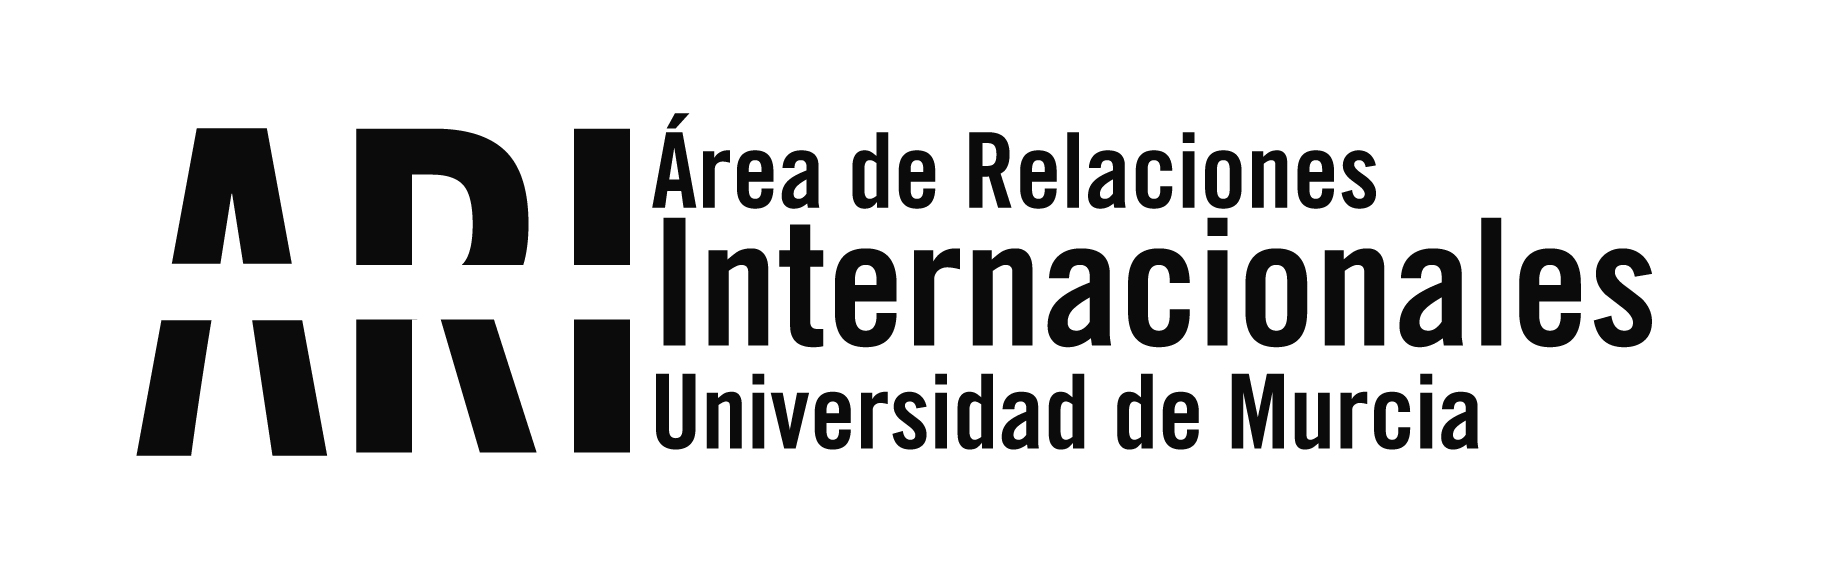 La Universidad de Murcia tiene presencia en la UPV doblemente en las jornadas Erasmus + 2015 - Área de Relaciones Internacionales